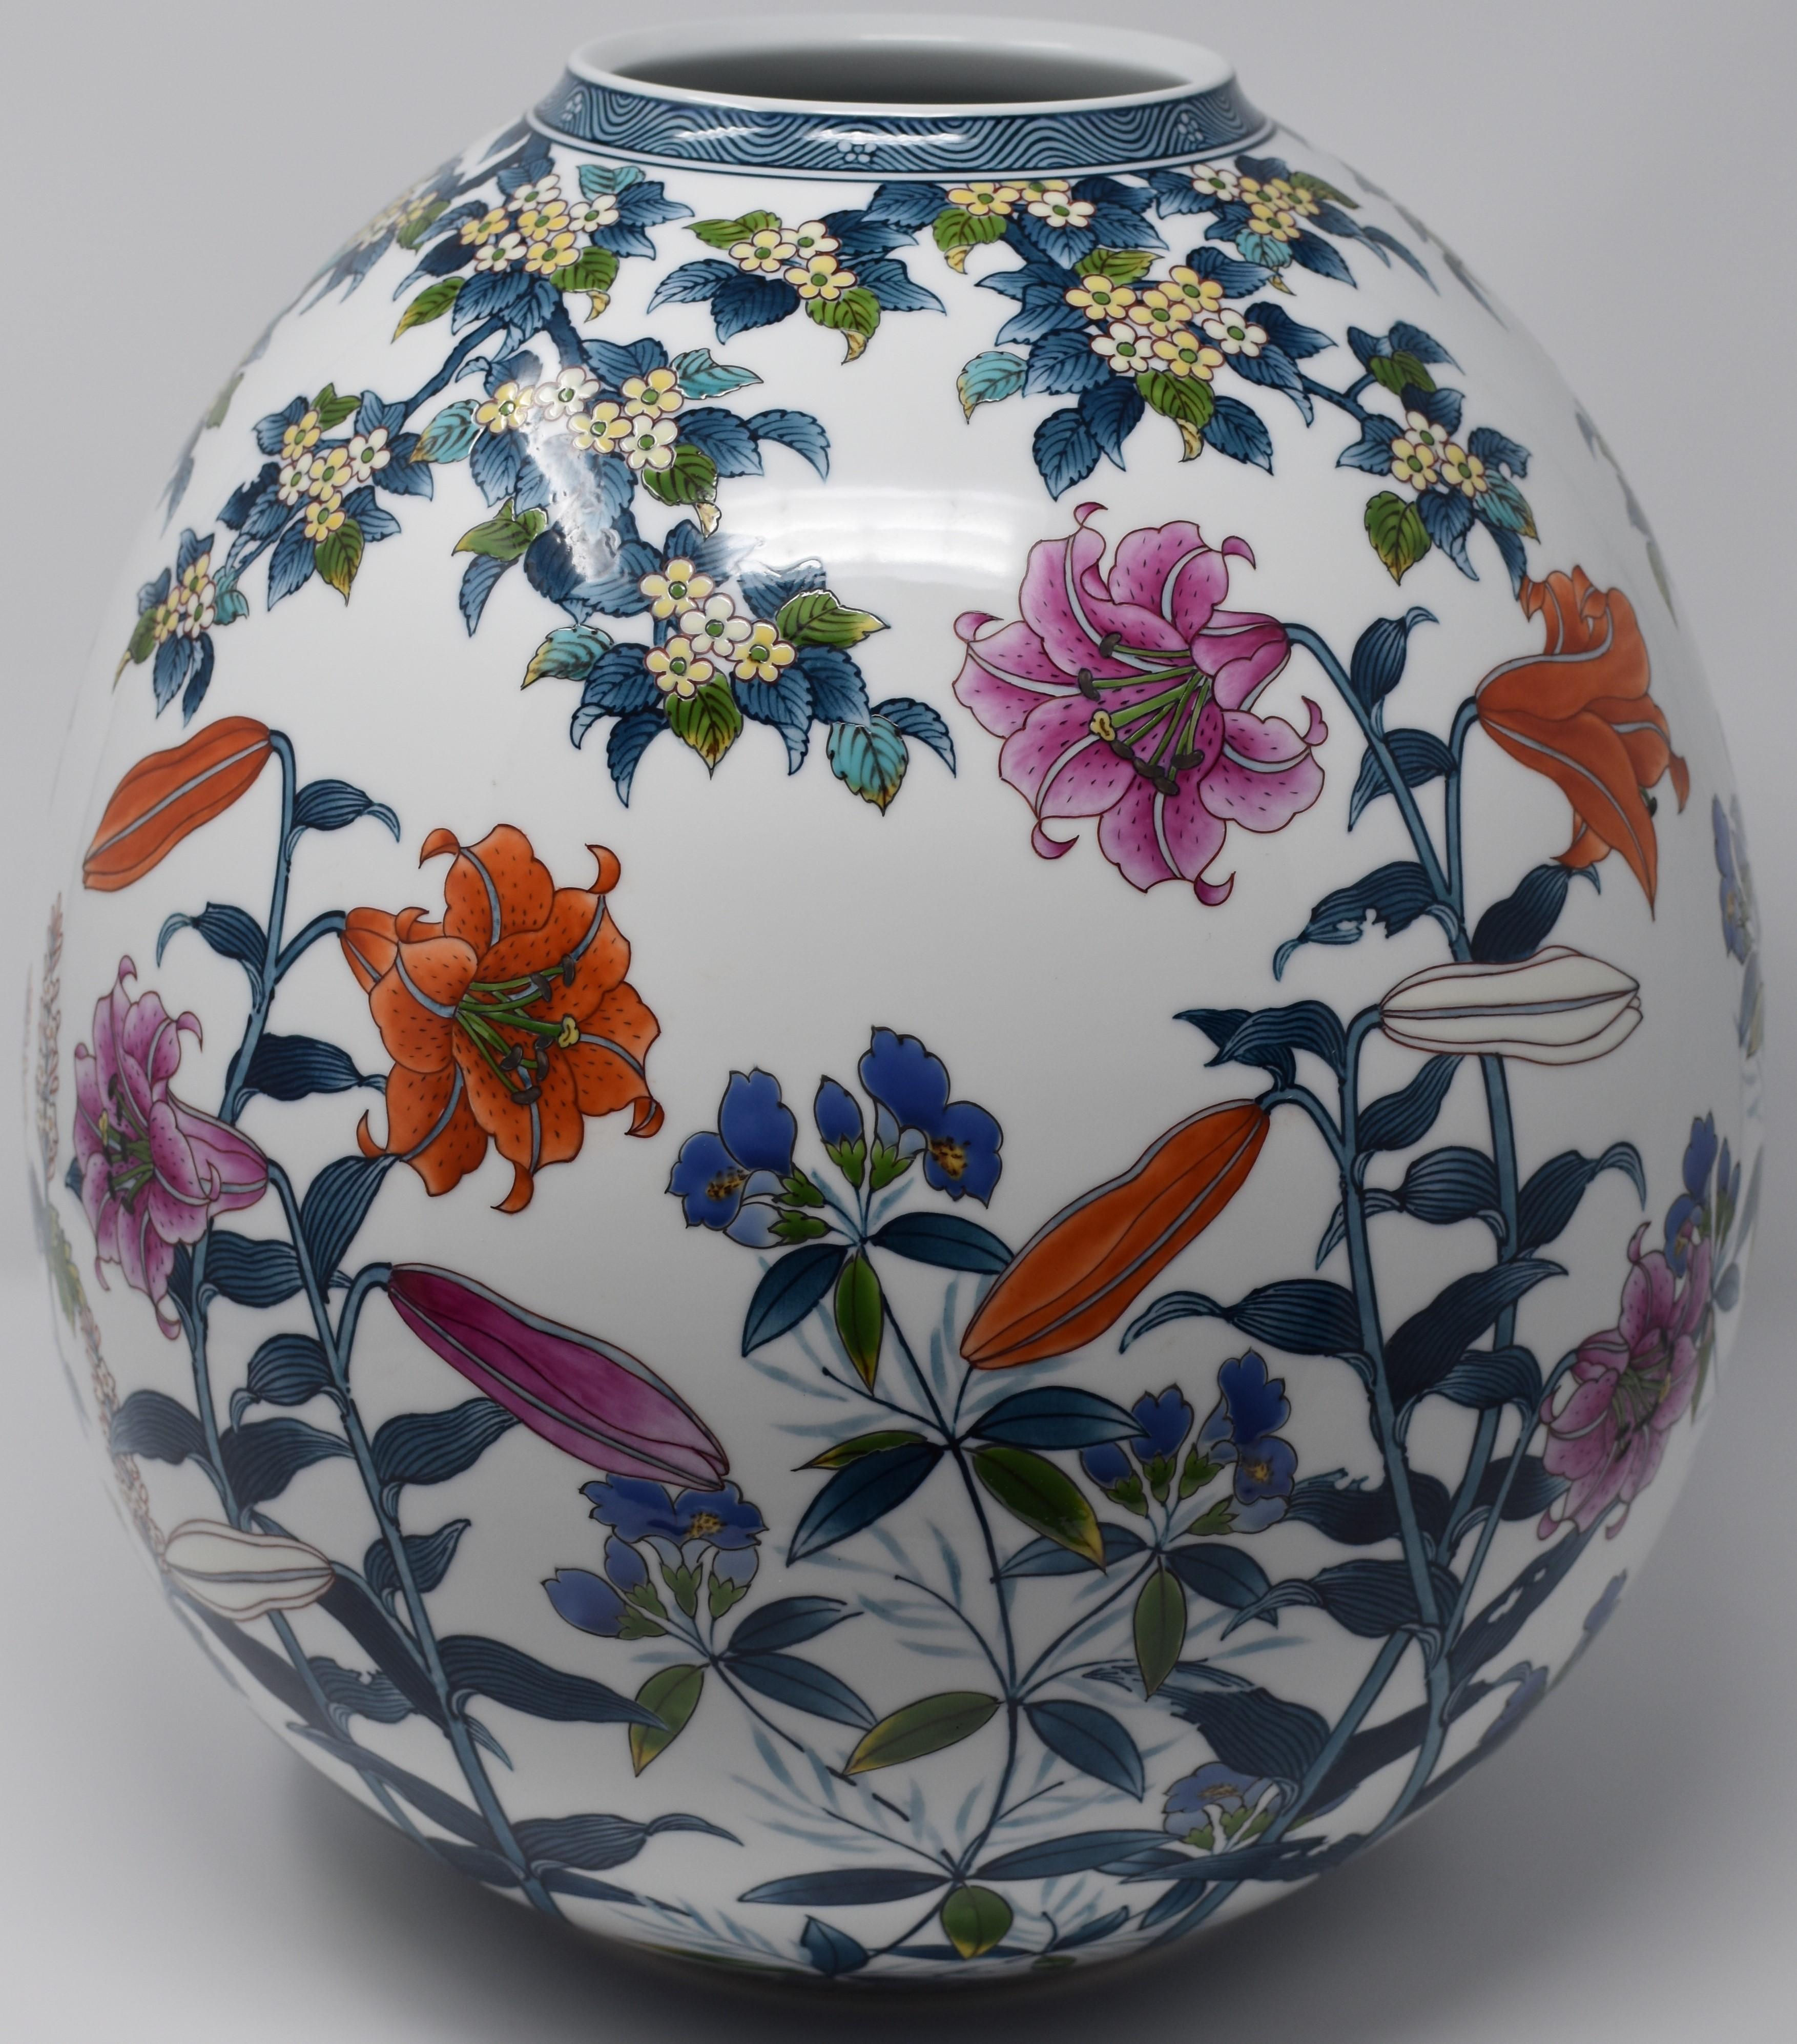  Contempory Imari Large Japanese Decorative Porcelain Vase by Master Artist 7